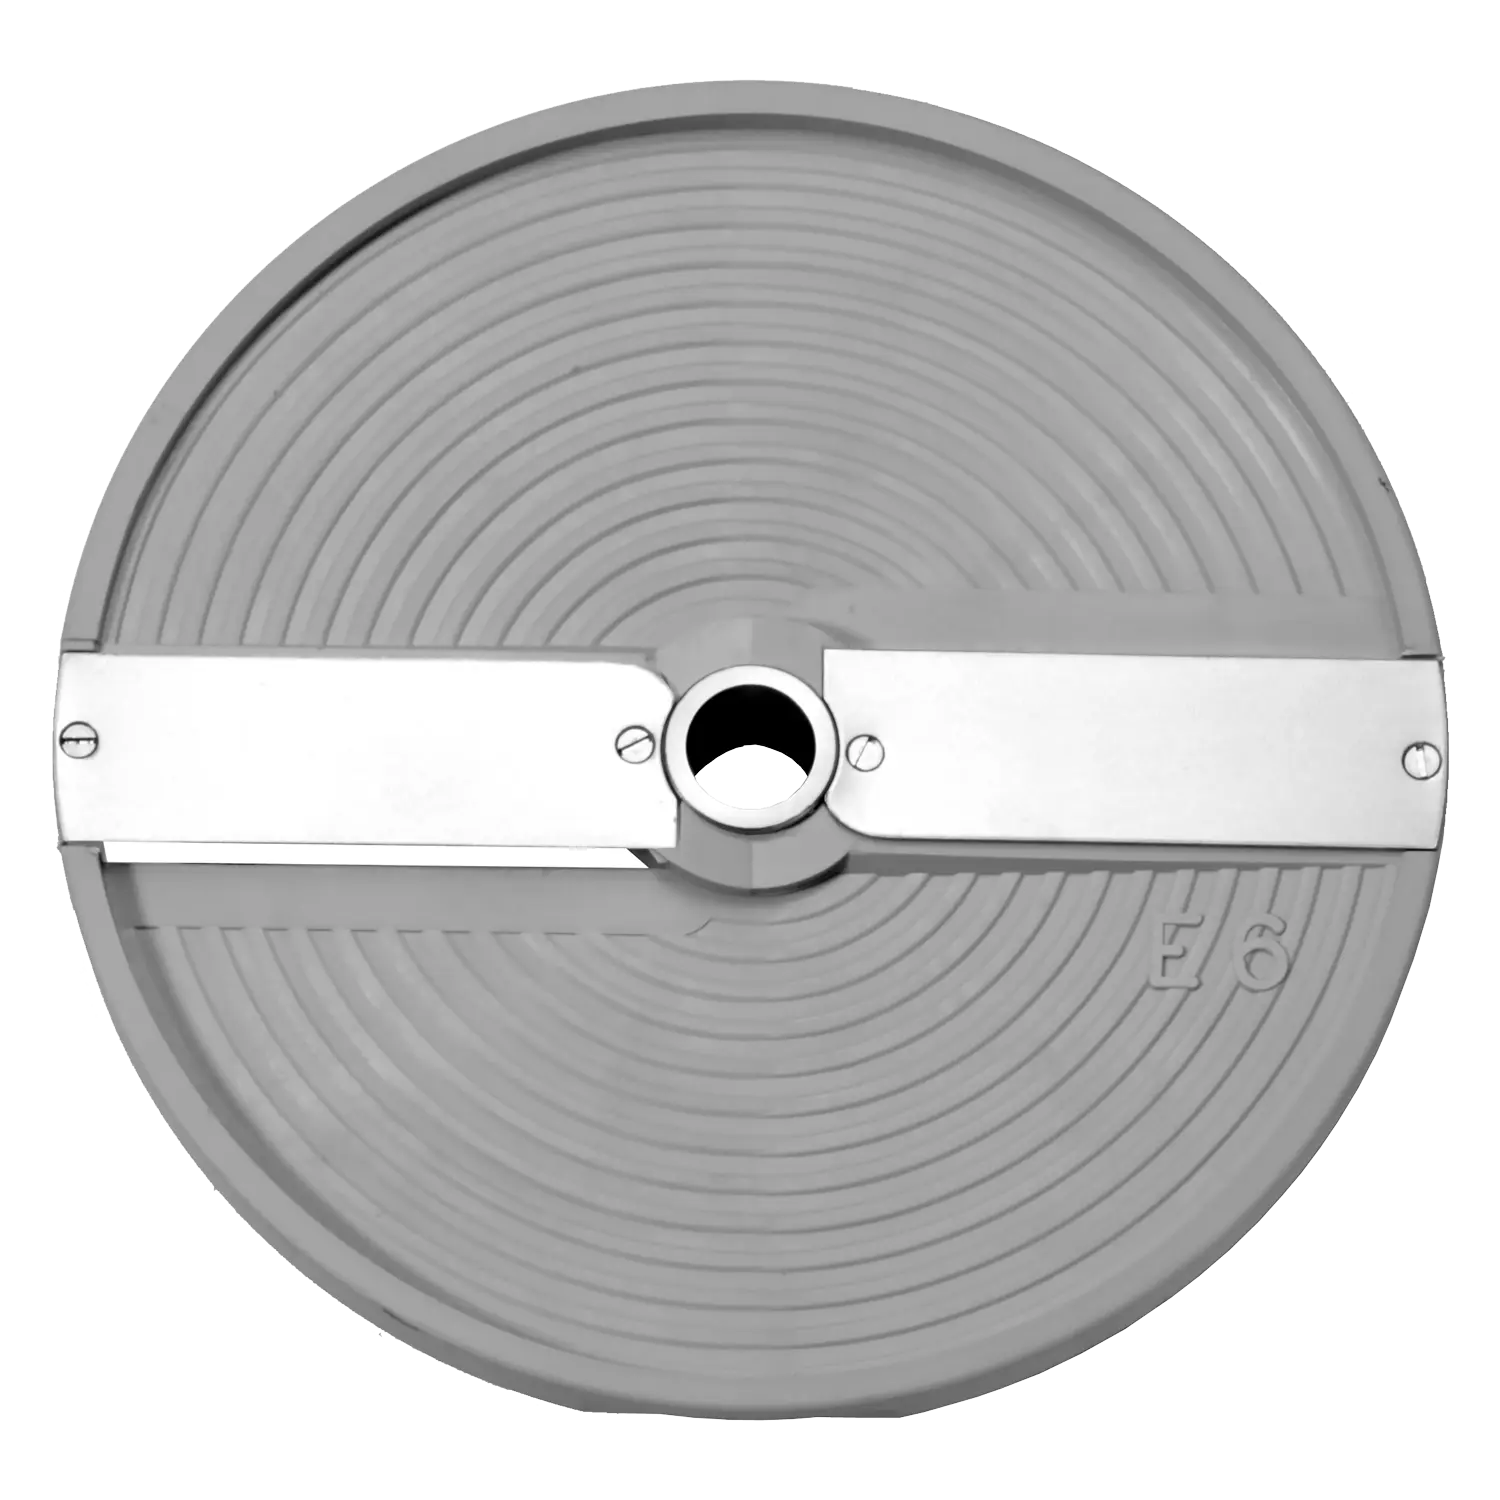 DISK E14 AL - Disk plátkovací 14 mm pro PSP 400 a PSR 800